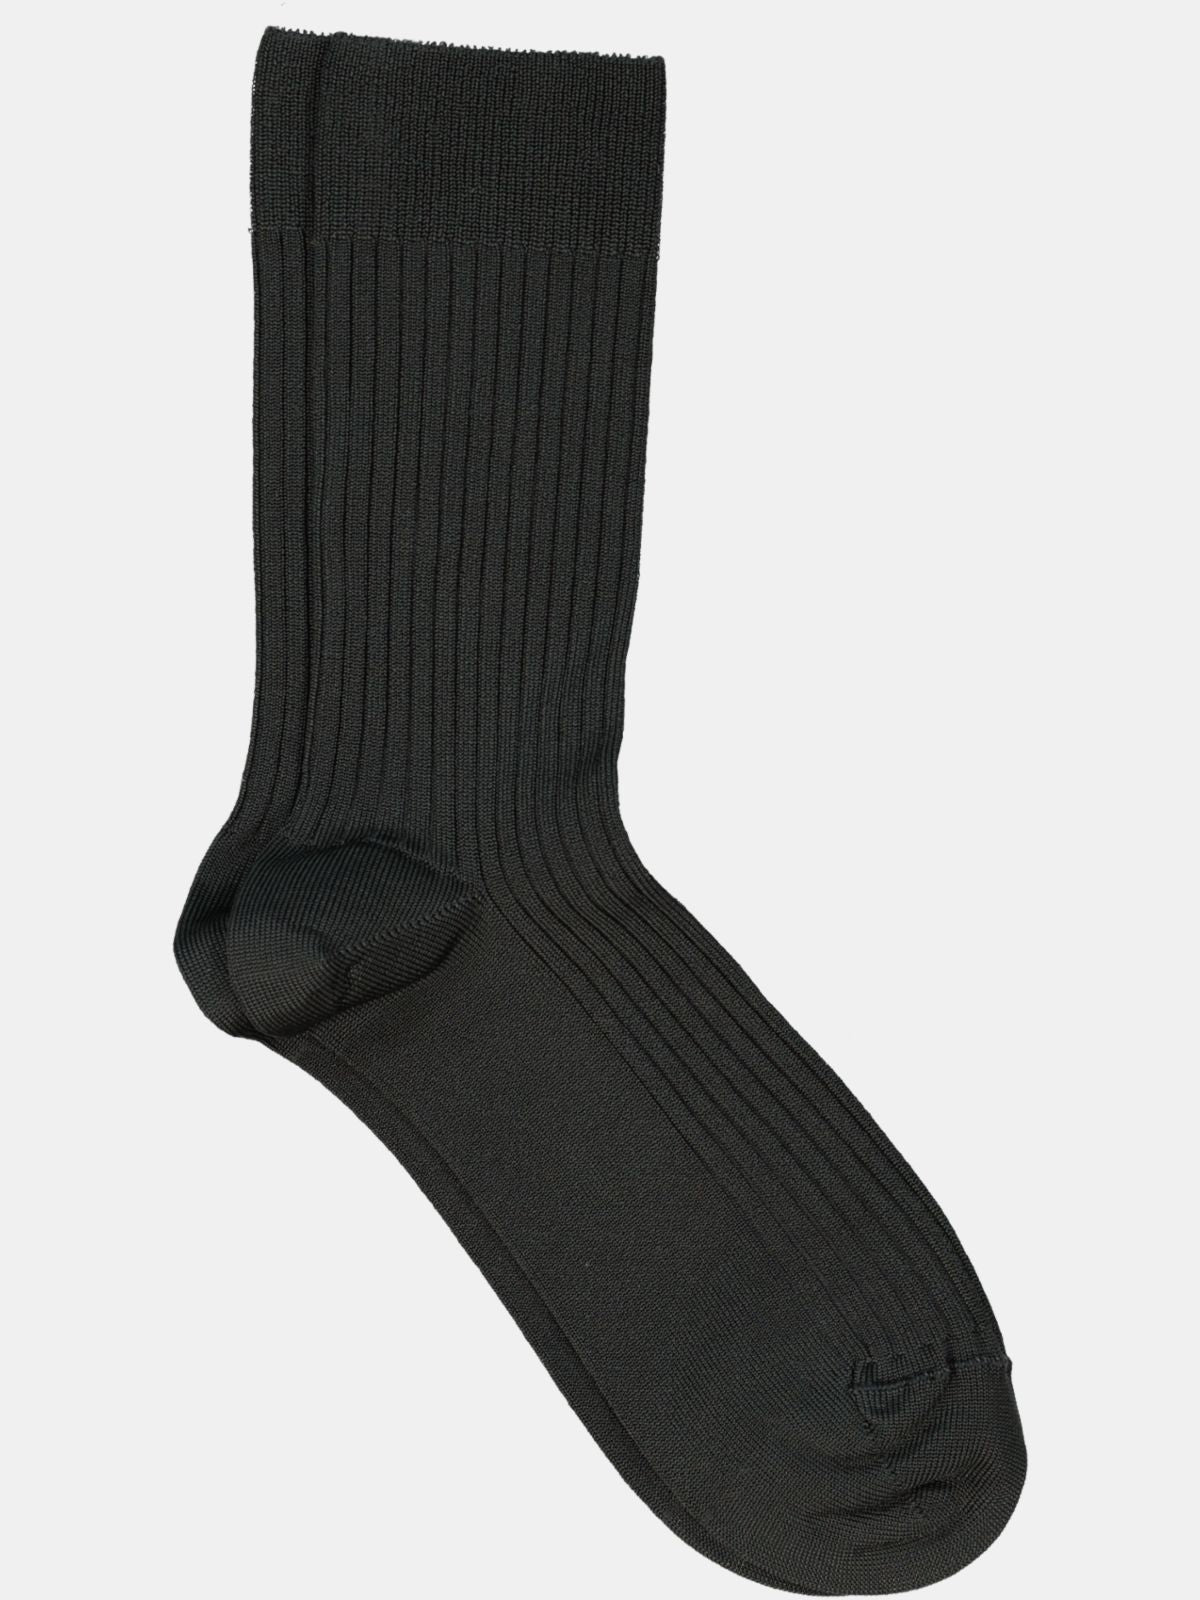 Mrs. Hoisery mrs silky classic socks black